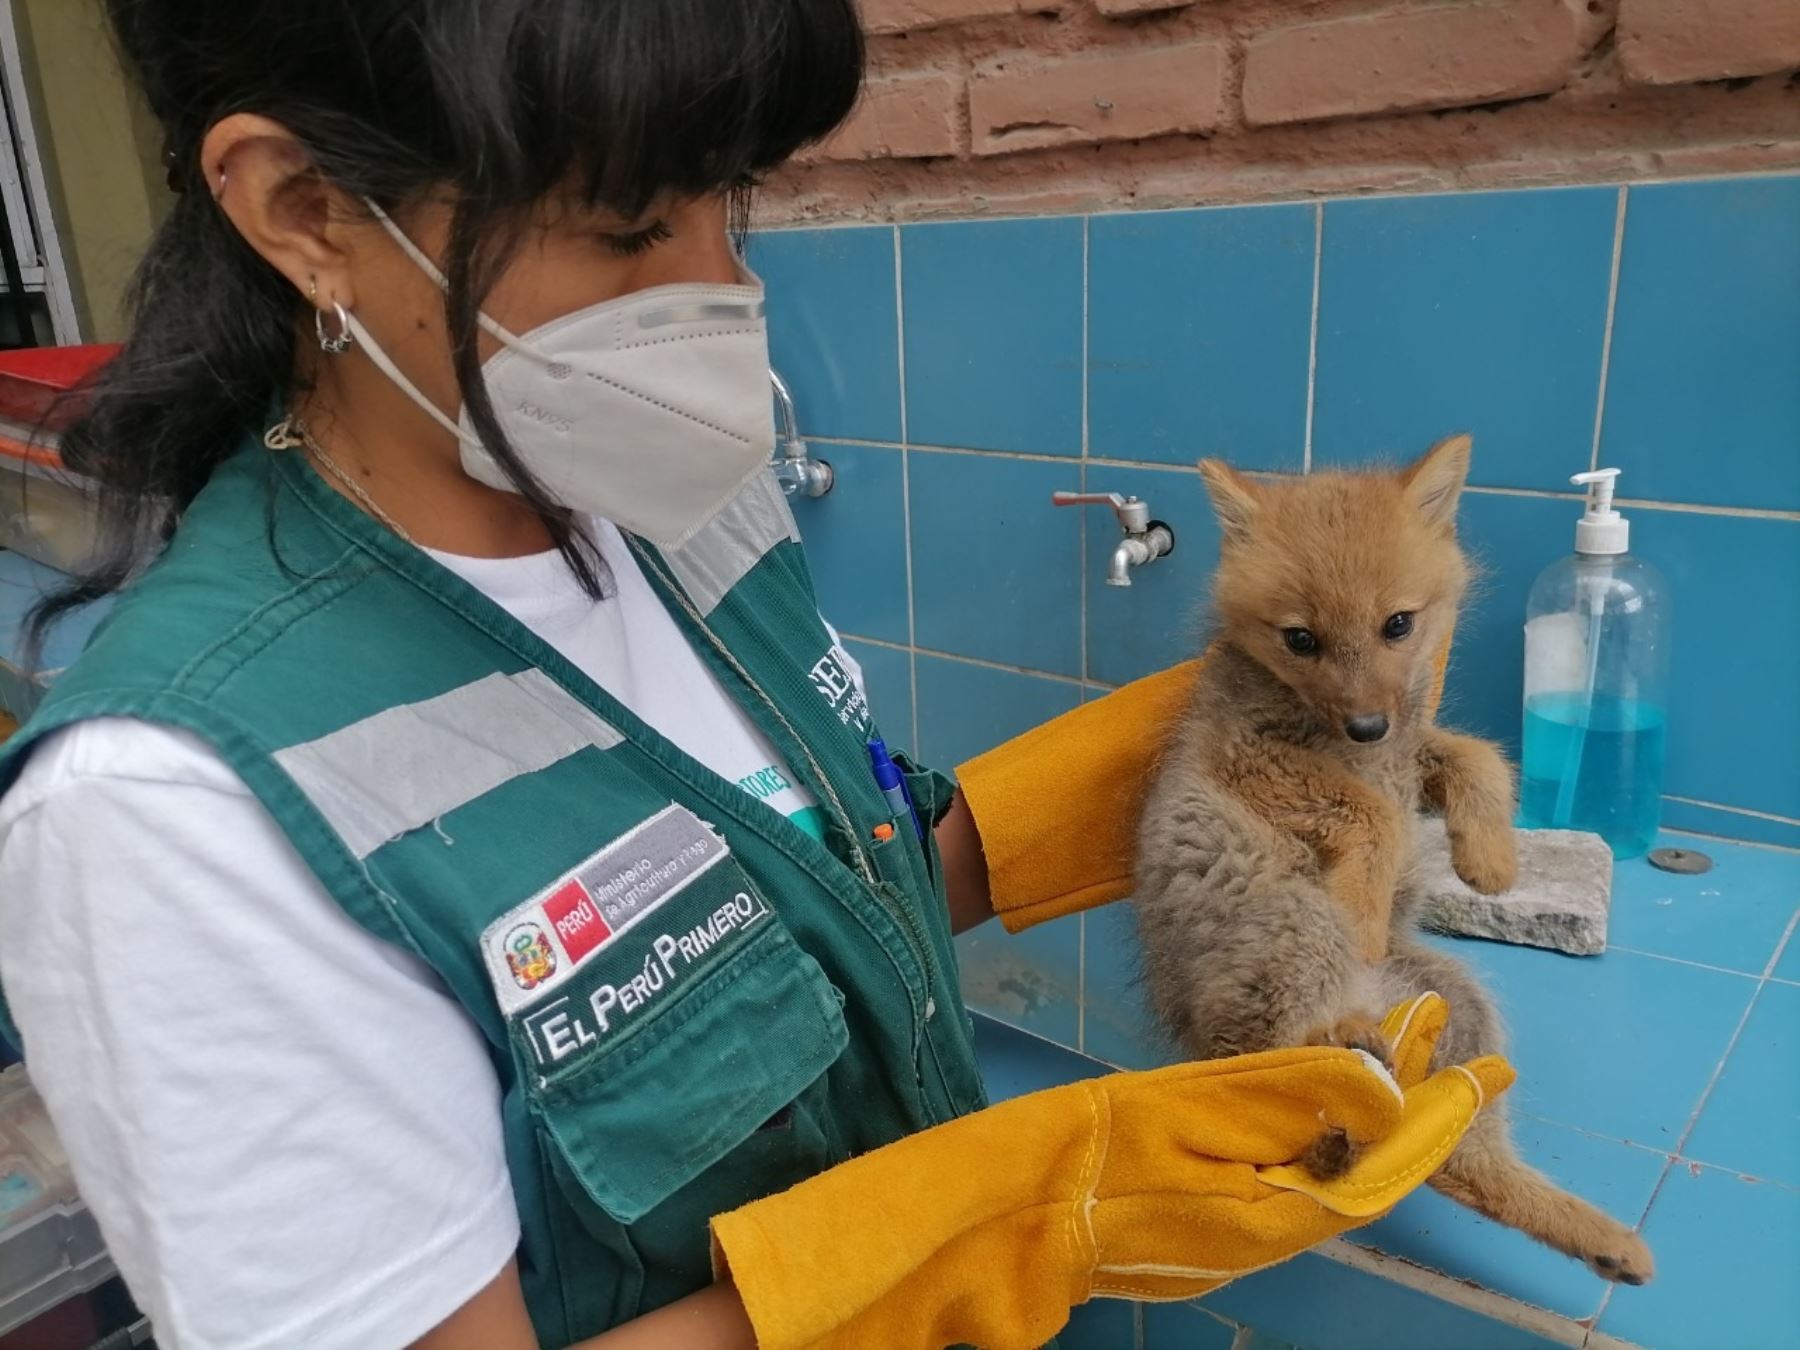 Autoridades rescataron en Arequipa a una cría de zorro andino de 3 meses de edad que sufrió la mutilación de parte de su cola por inescrupulosos. Foto: ANDINA/difusión.